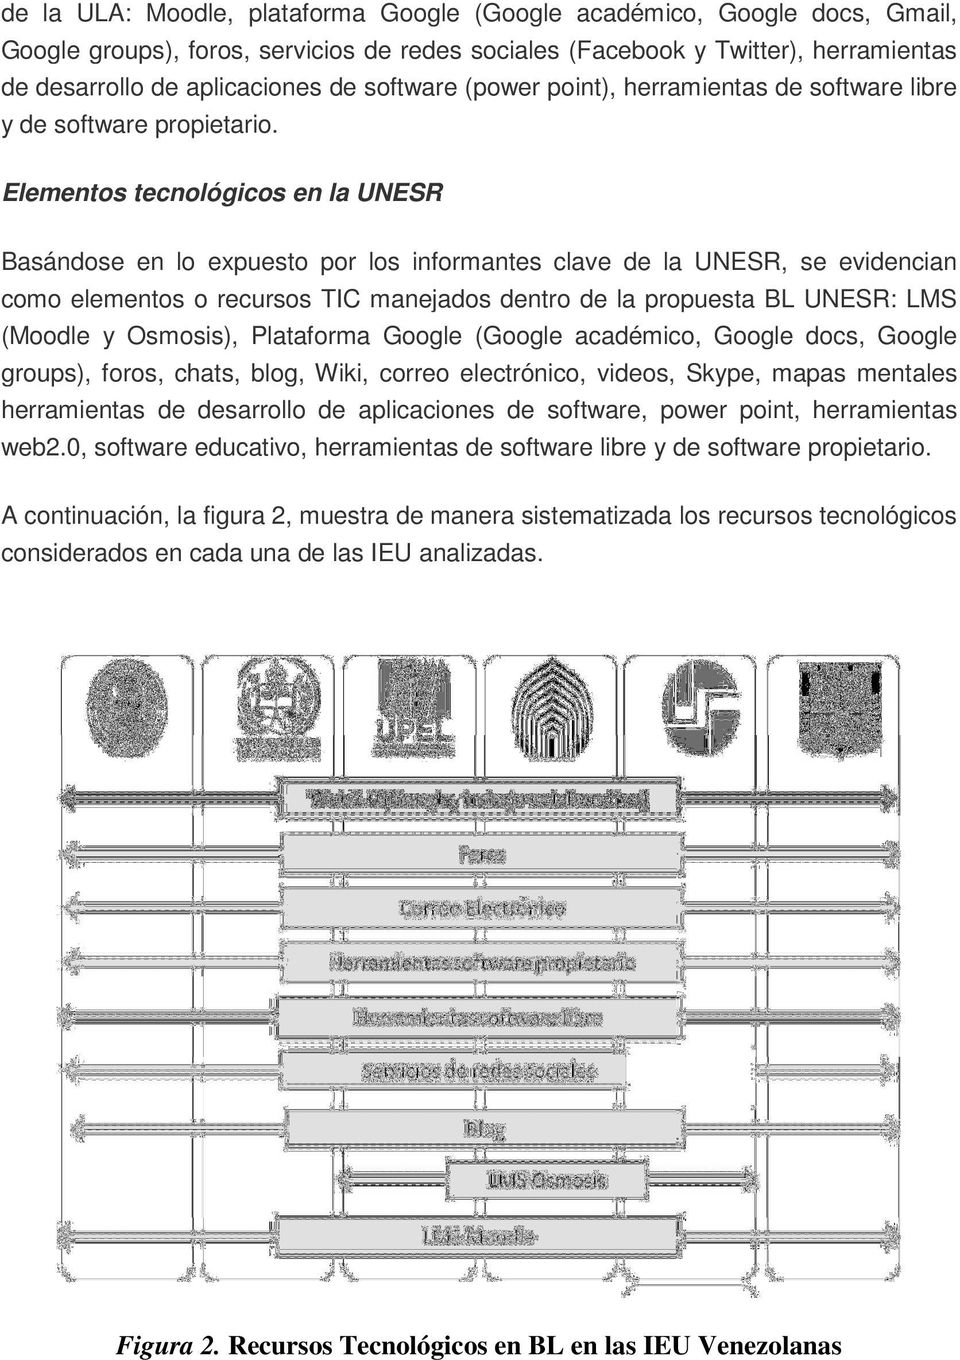 Elementos tecnológicos en la UNESR Basándose en lo expuesto por los informantes clave de la UNESR, se evidencian como elementos o recursos TIC manejados dentro de la propuesta BL UNESR: LMS (Moodle y